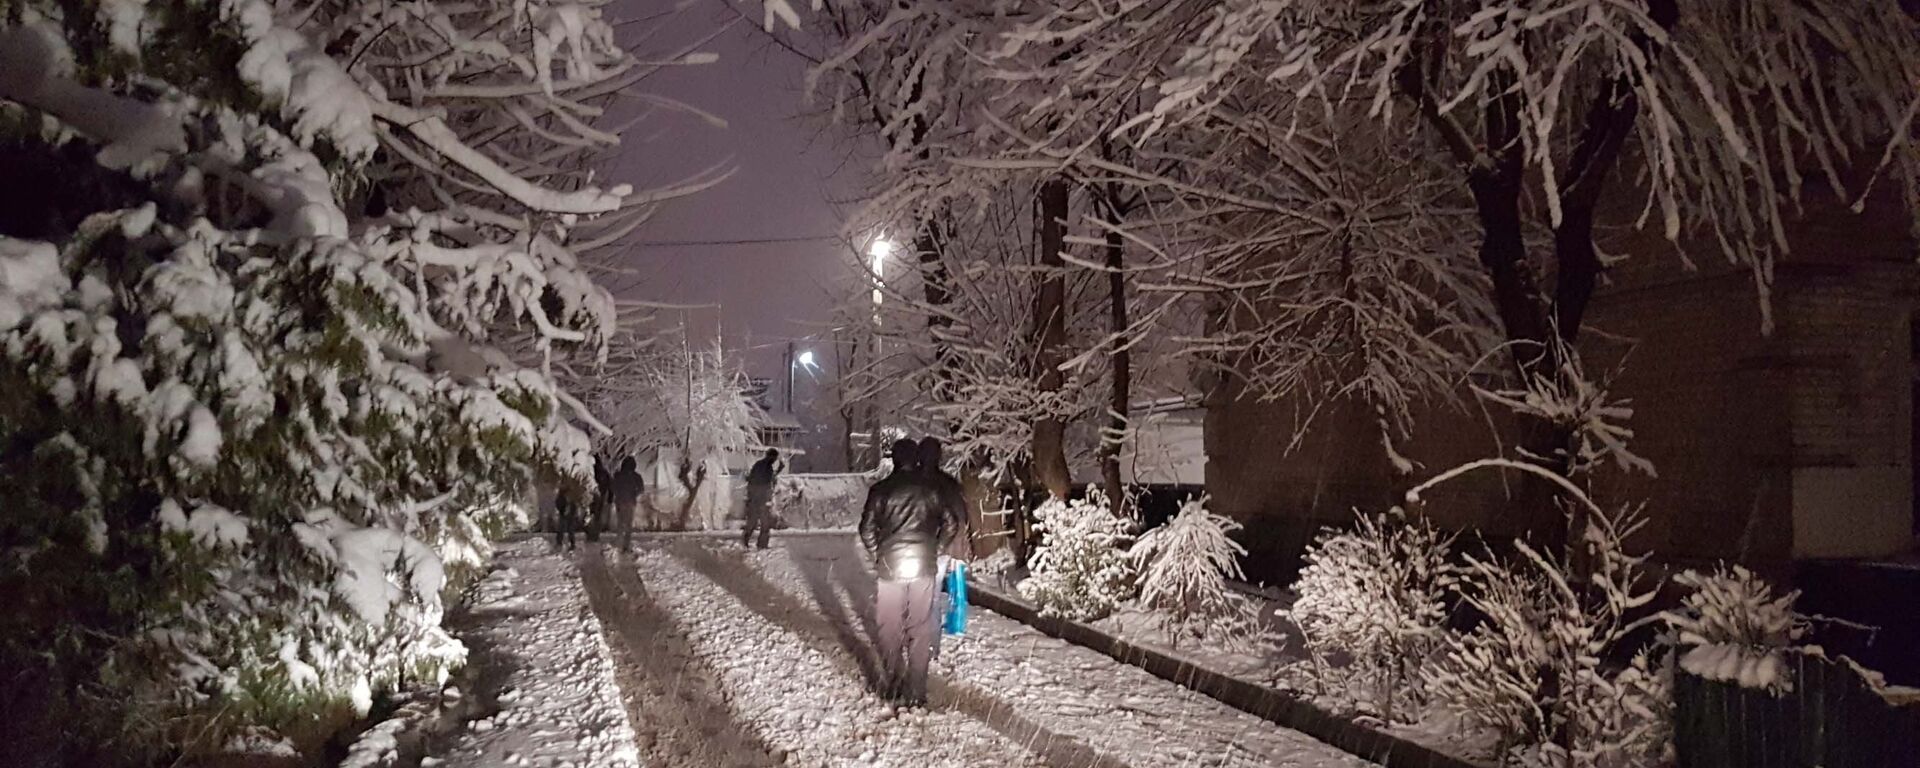 Снегопад в Душанбе, архивное фото - Sputnik Тоҷикистон, 1920, 13.12.2021